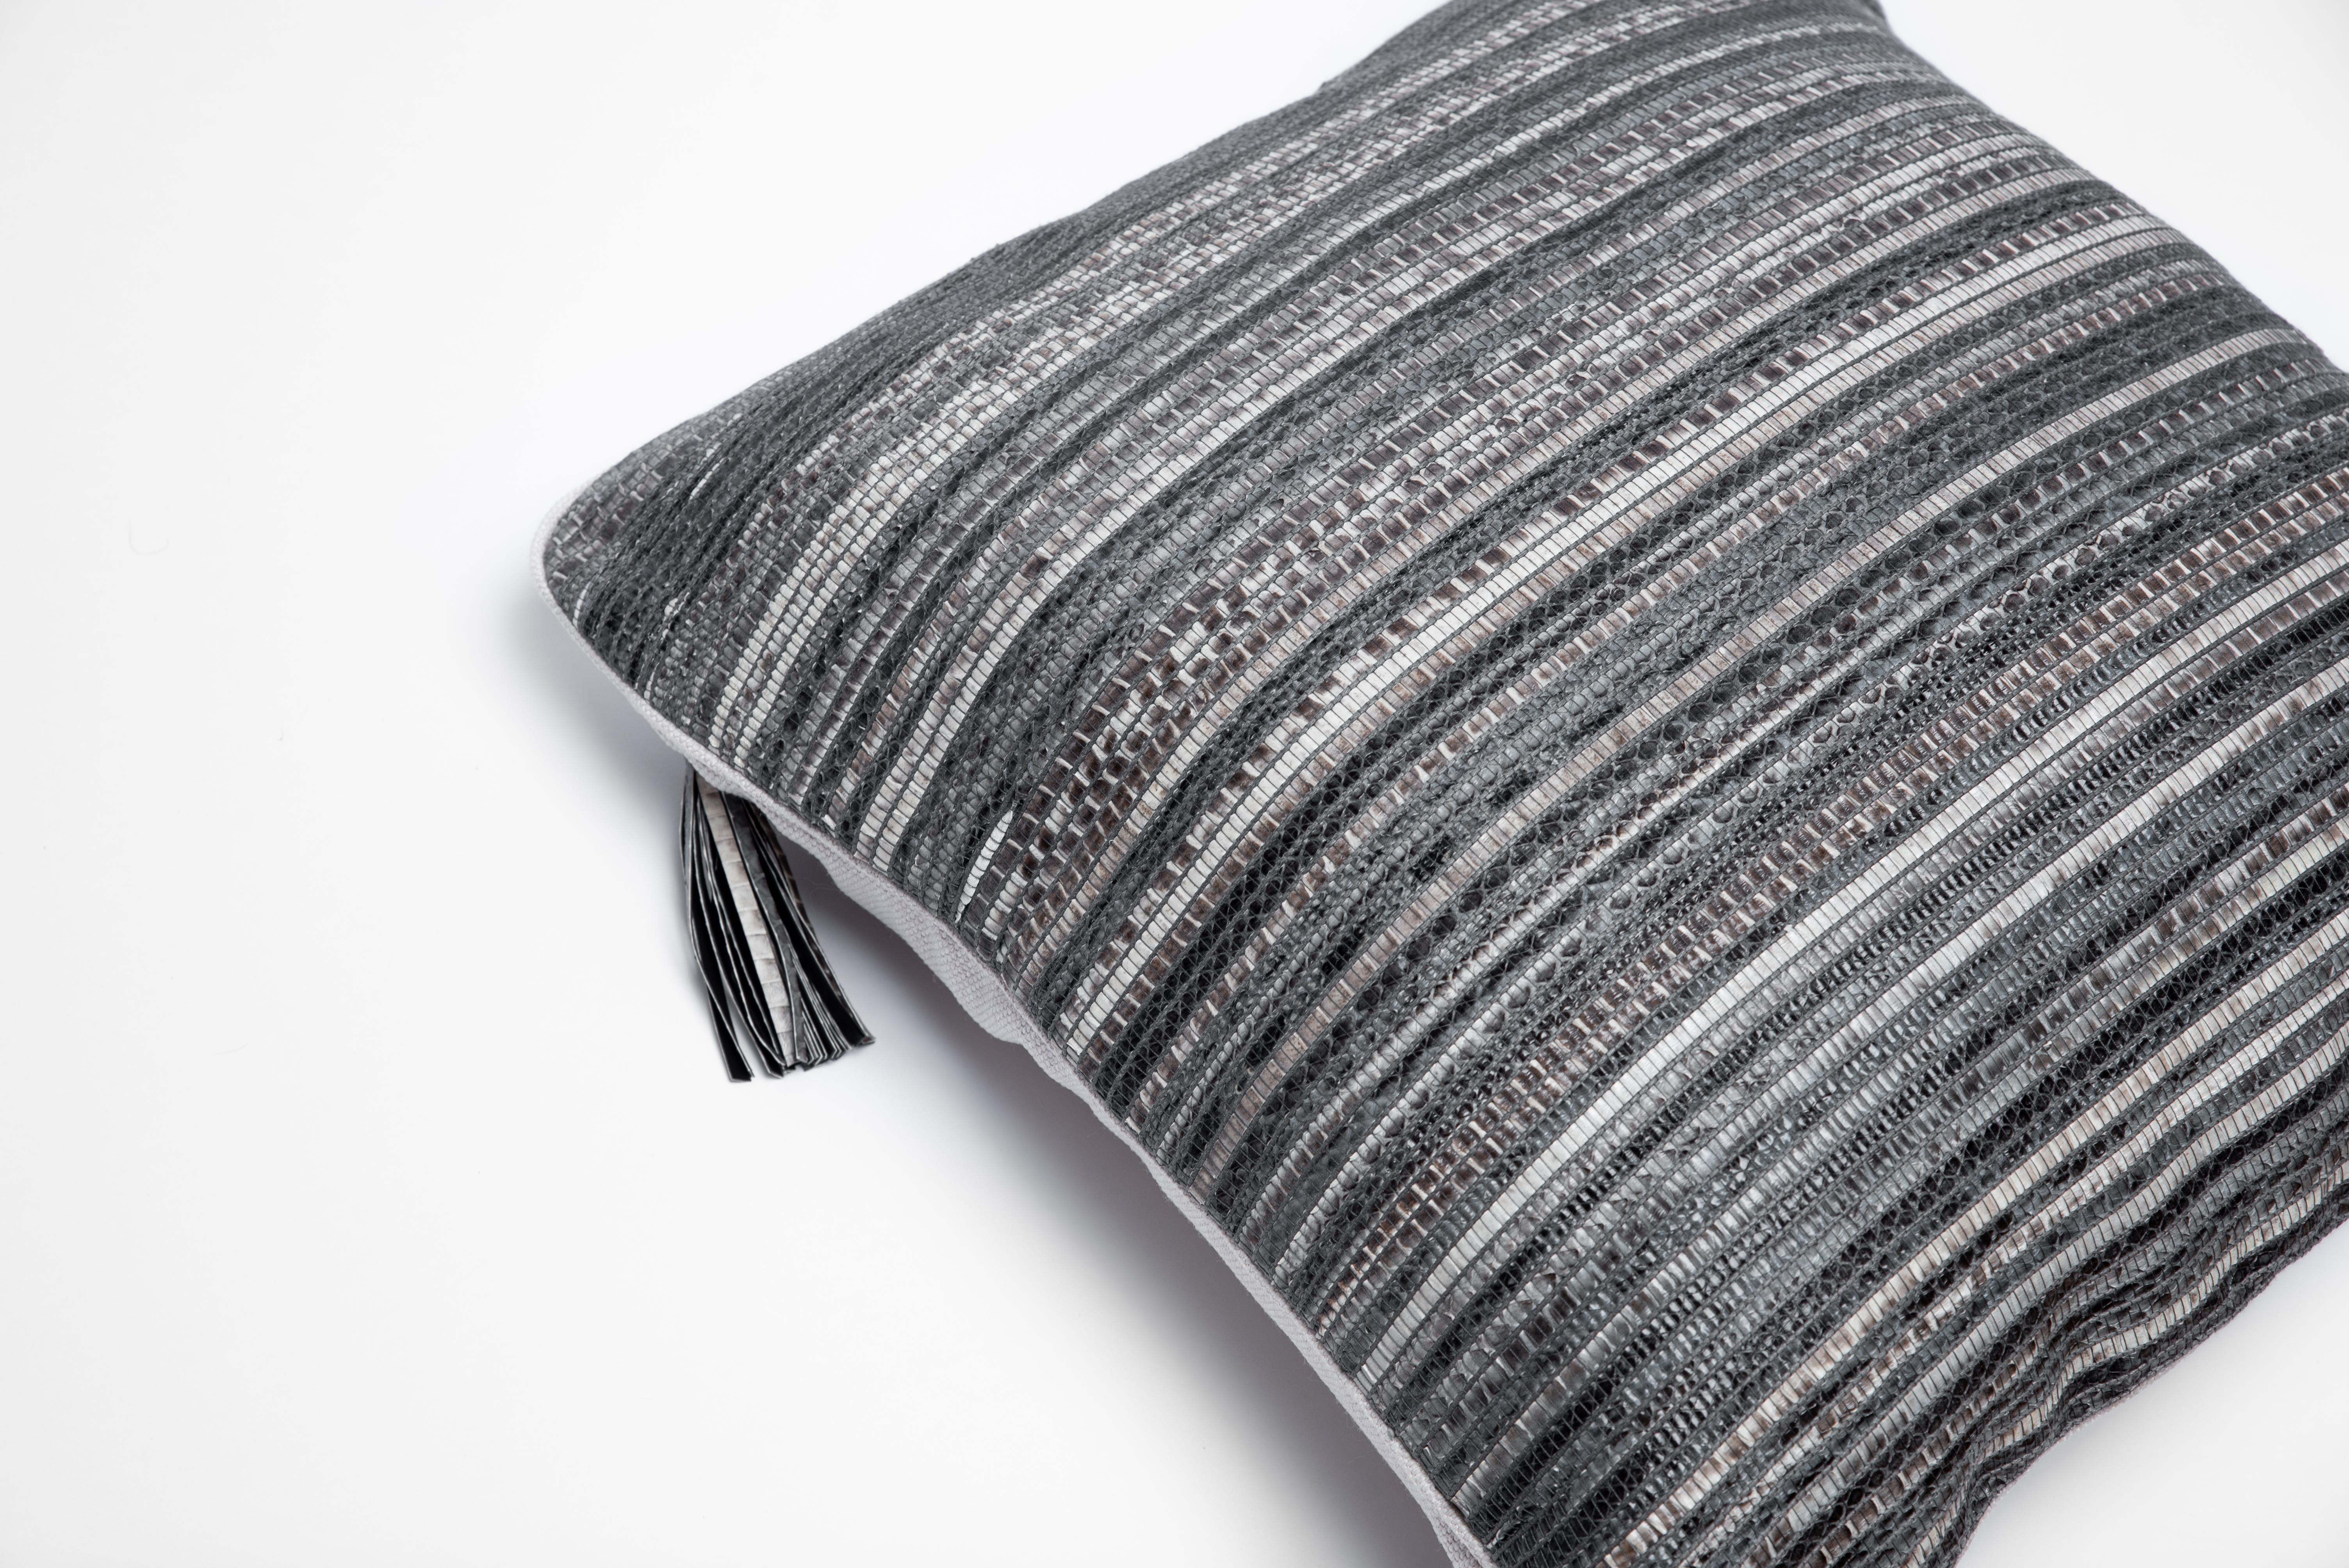 Le coussin Woven Snakeskin de Kifu Paris est l'ultime pièce de textile de luxe pour la maison. Ce textile est unique et original pour la marque, qui utilise des techniques de tissage traditionnelles avec des métiers à bois pour développer ce textile